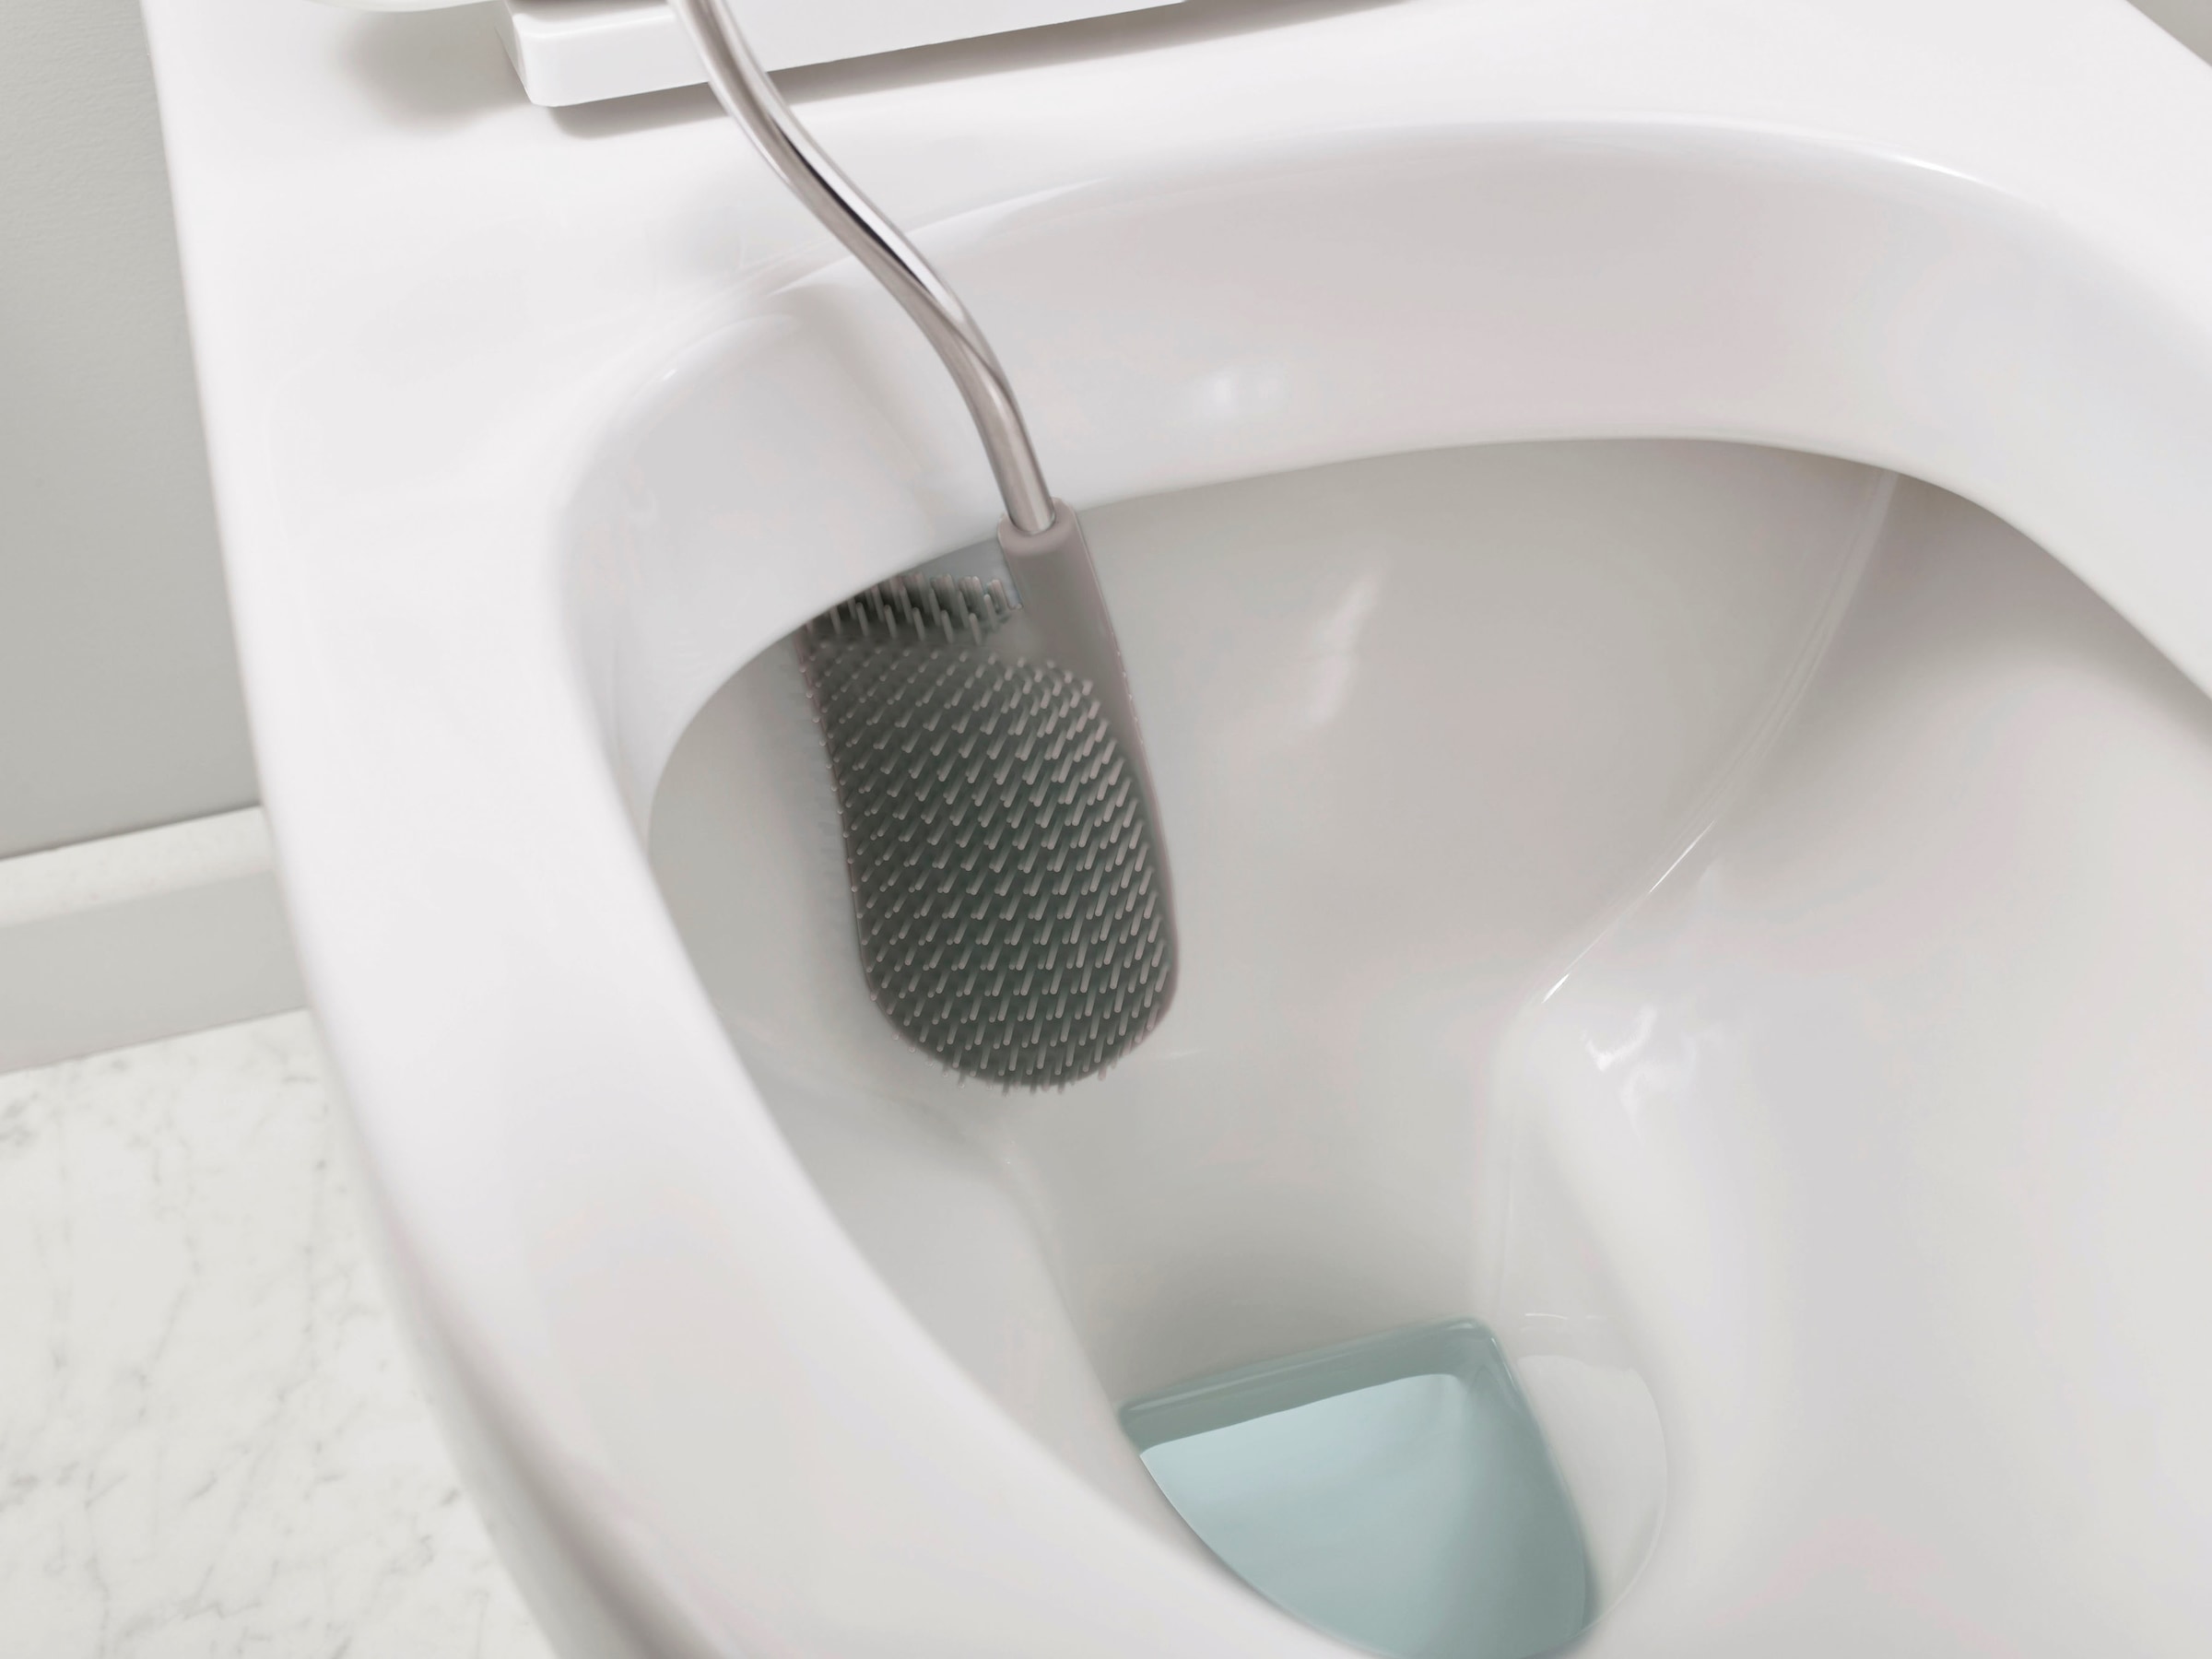 Joseph Joseph WC-Reinigungsbürste »Flex™«, Set, 2 St., aus Kunststoff-Edelstahl, mit Ständer, Tropfschutz & Antiverstopfungsdesign